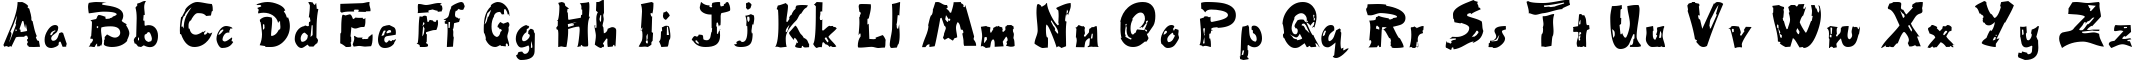 Пример написания английского алфавита шрифтом Fingerpaint